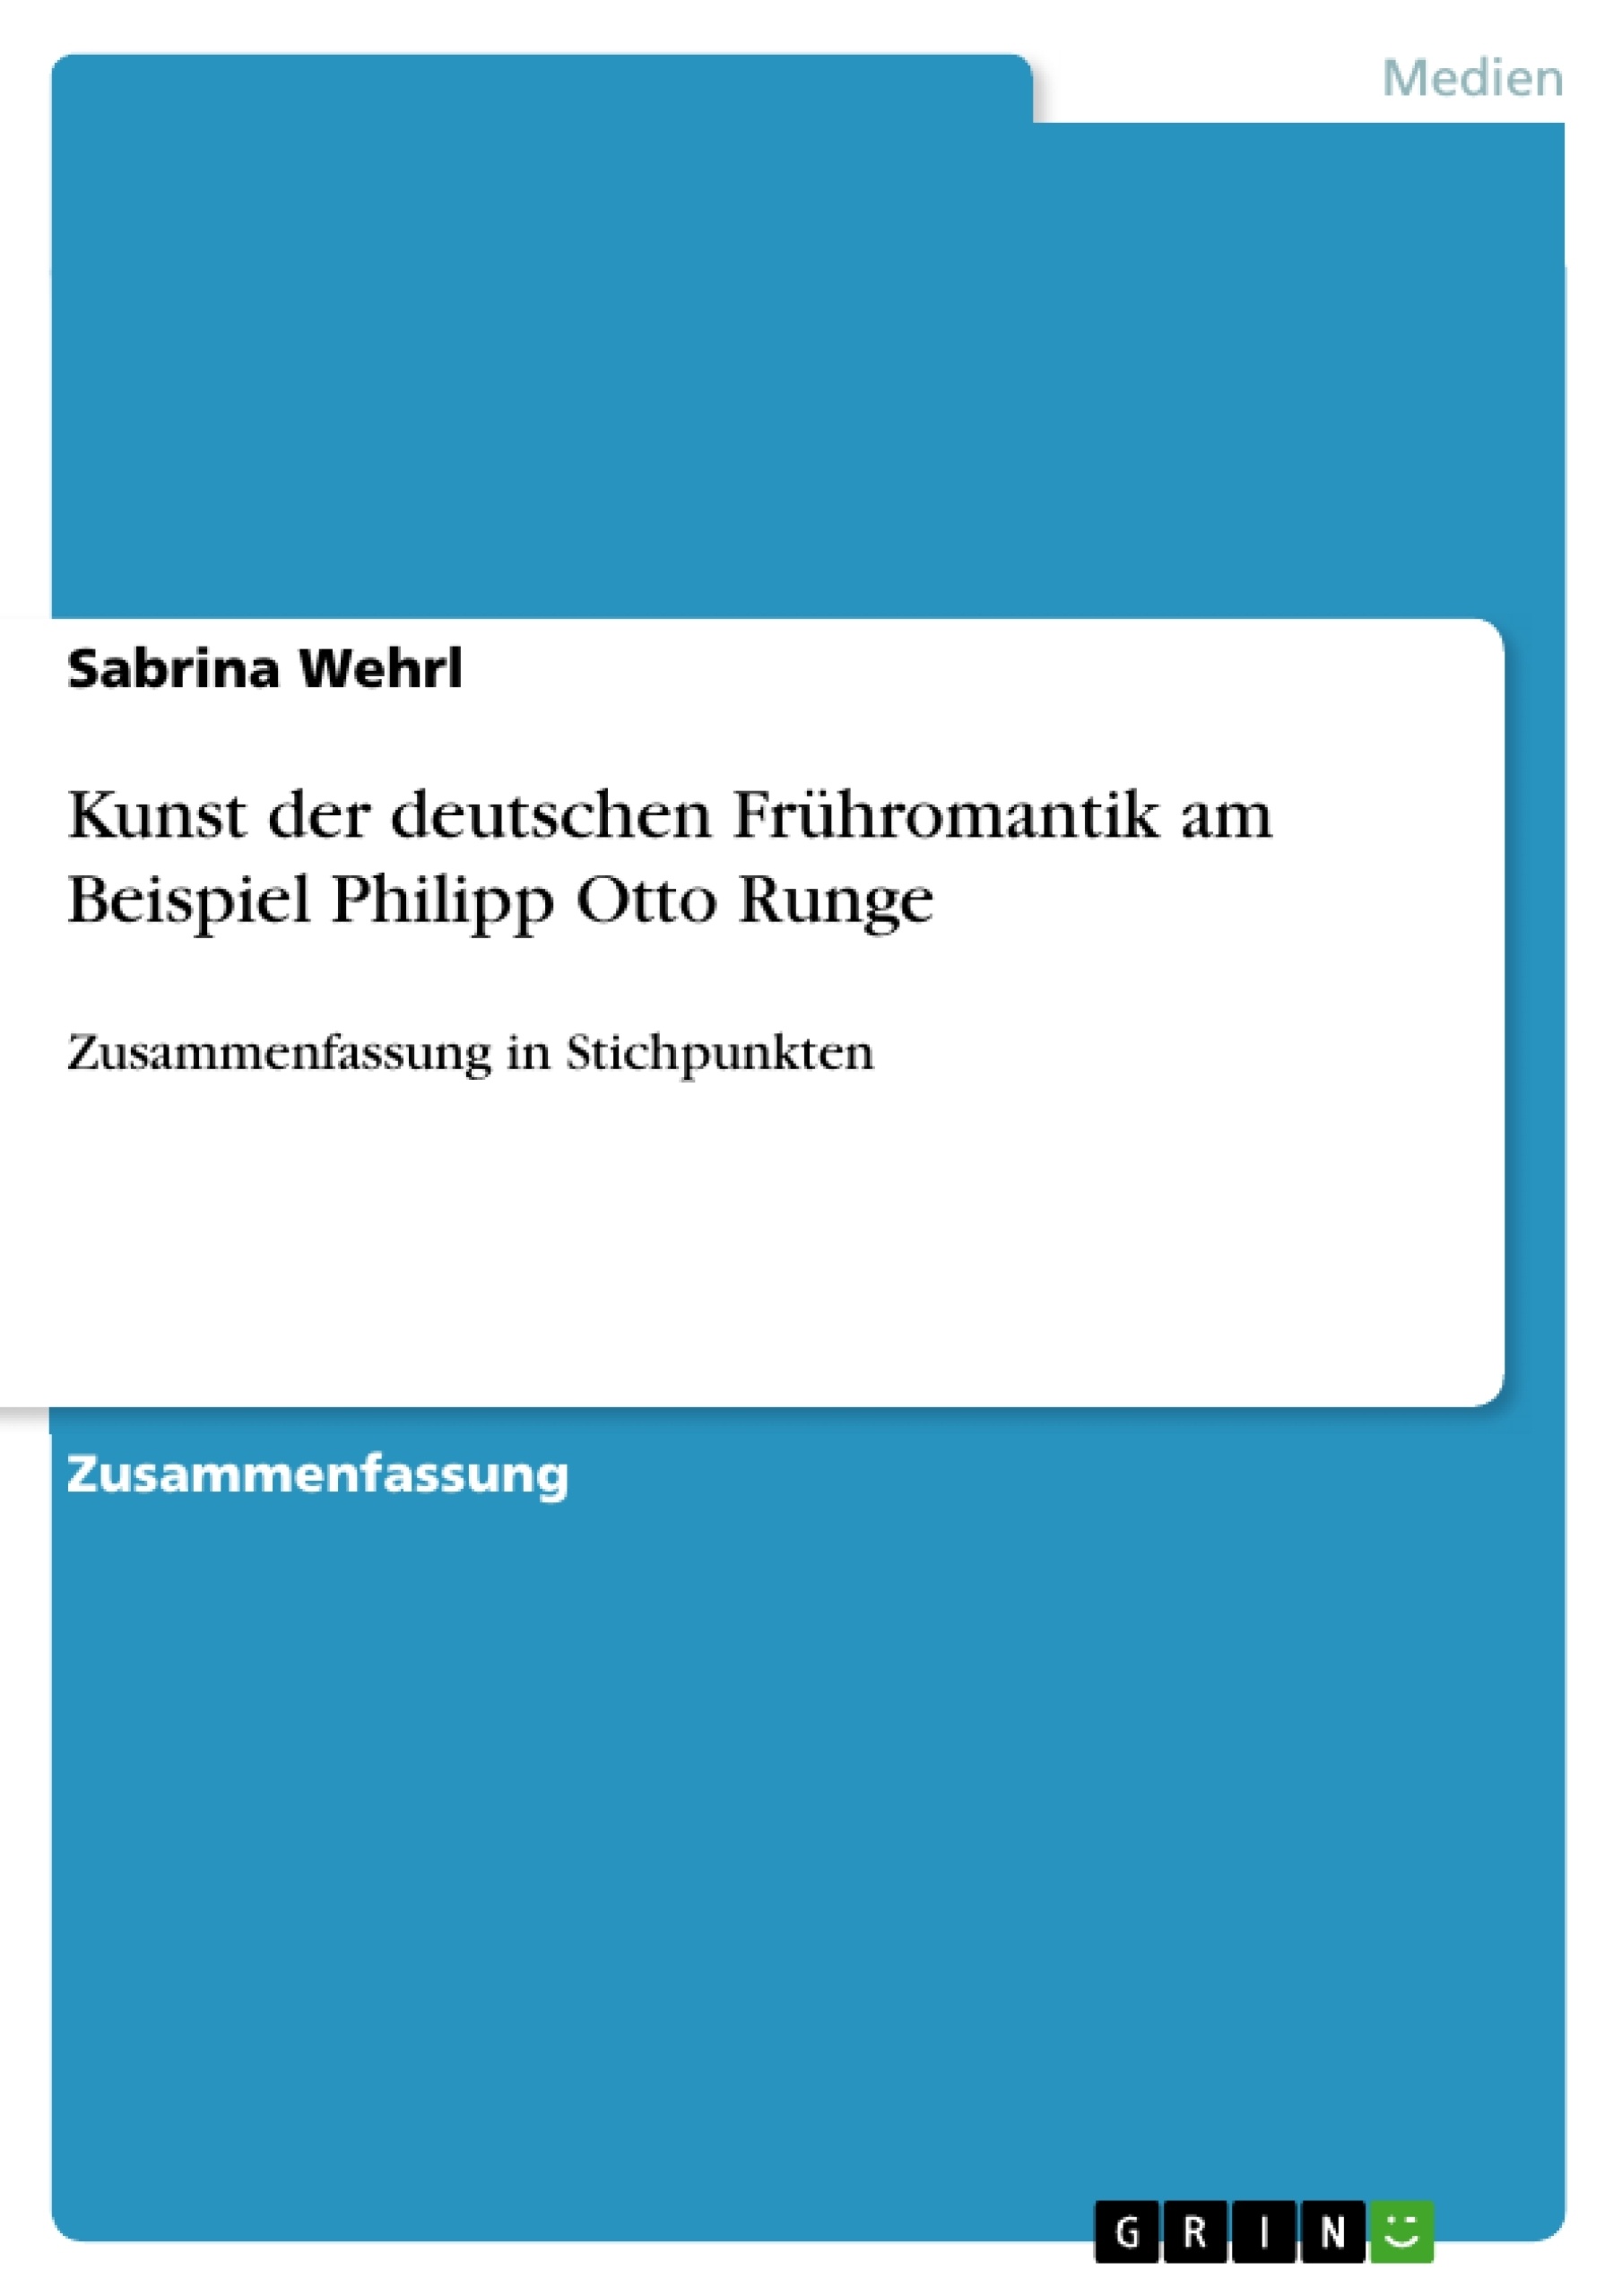 Título: Kunst der deutschen Frühromantik am Beispiel Philipp Otto Runge